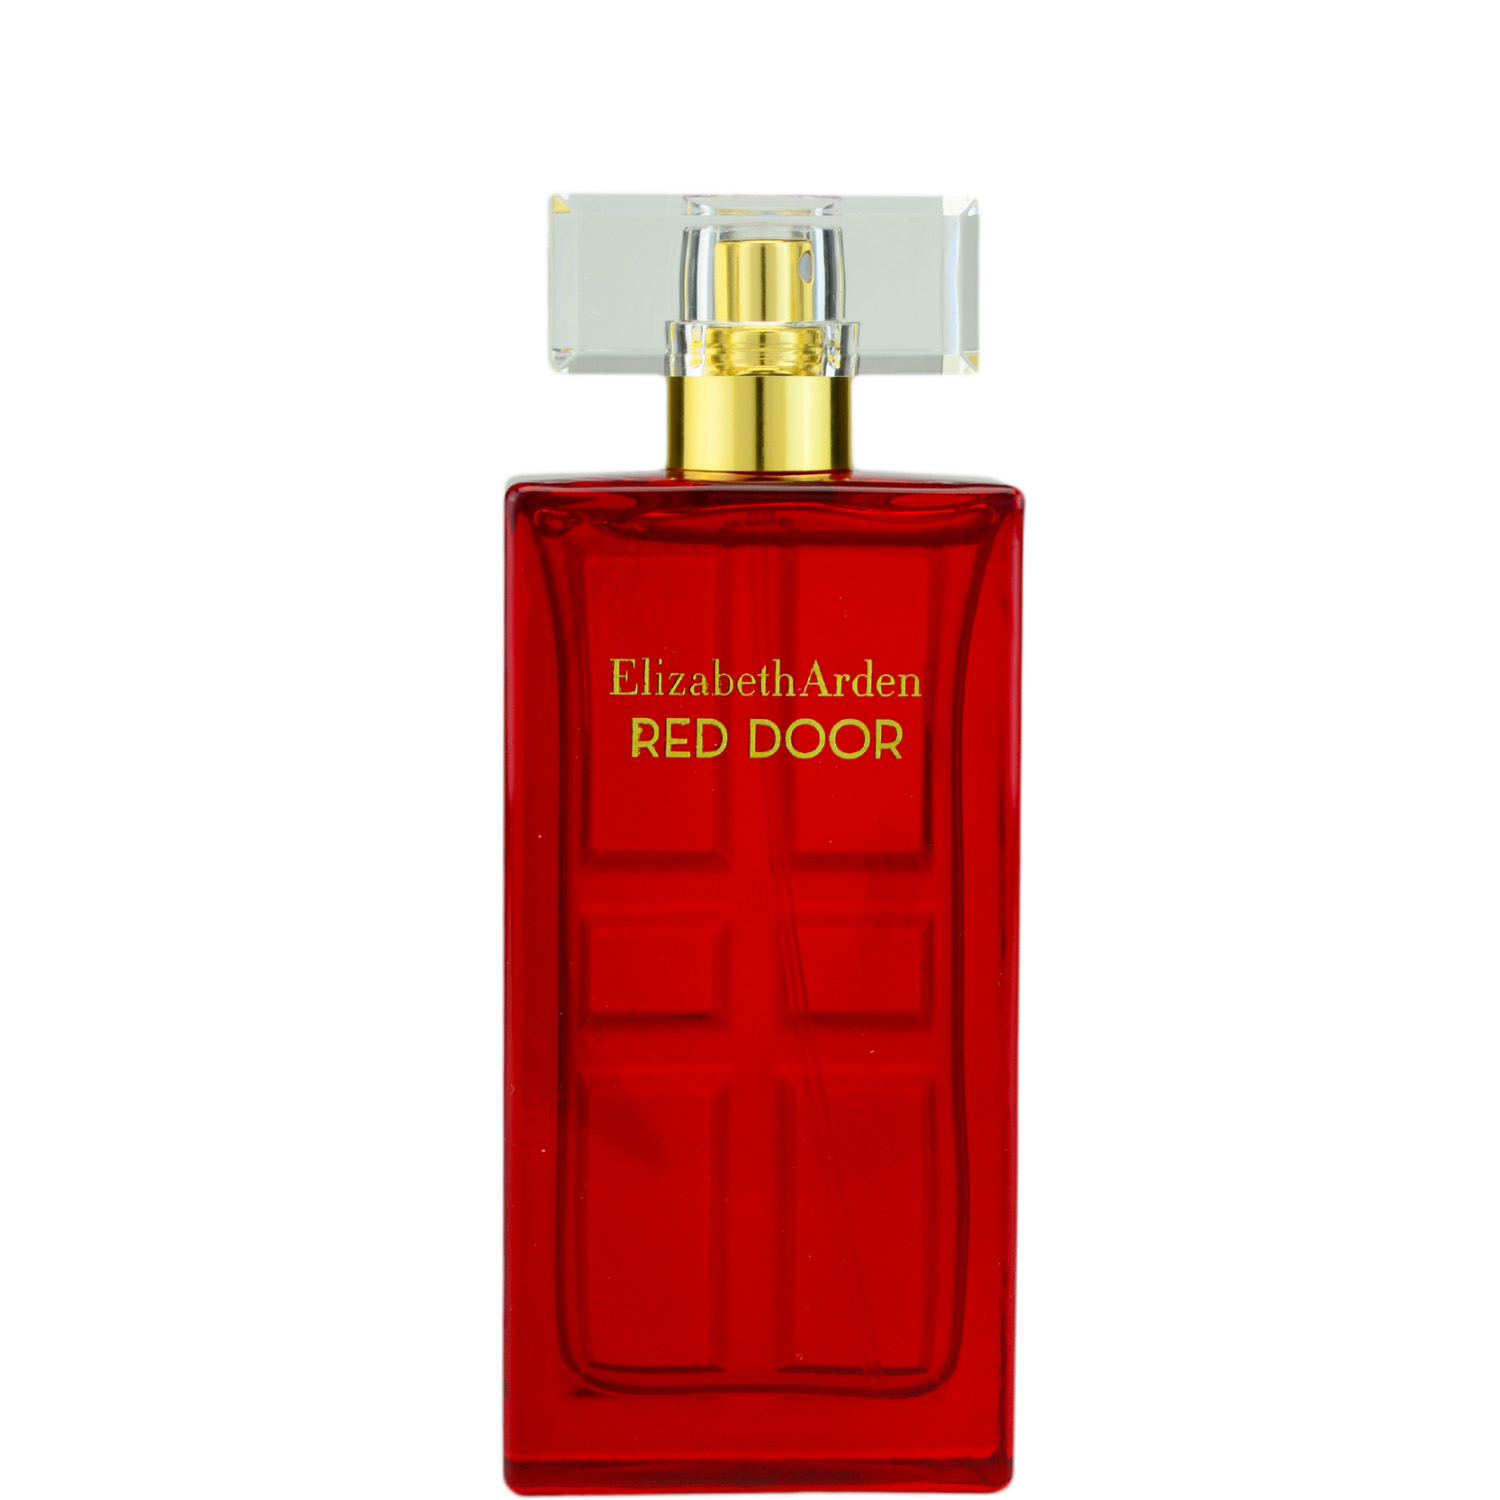 Elizabeth Arden Red Door Eau de Toilette 50ml